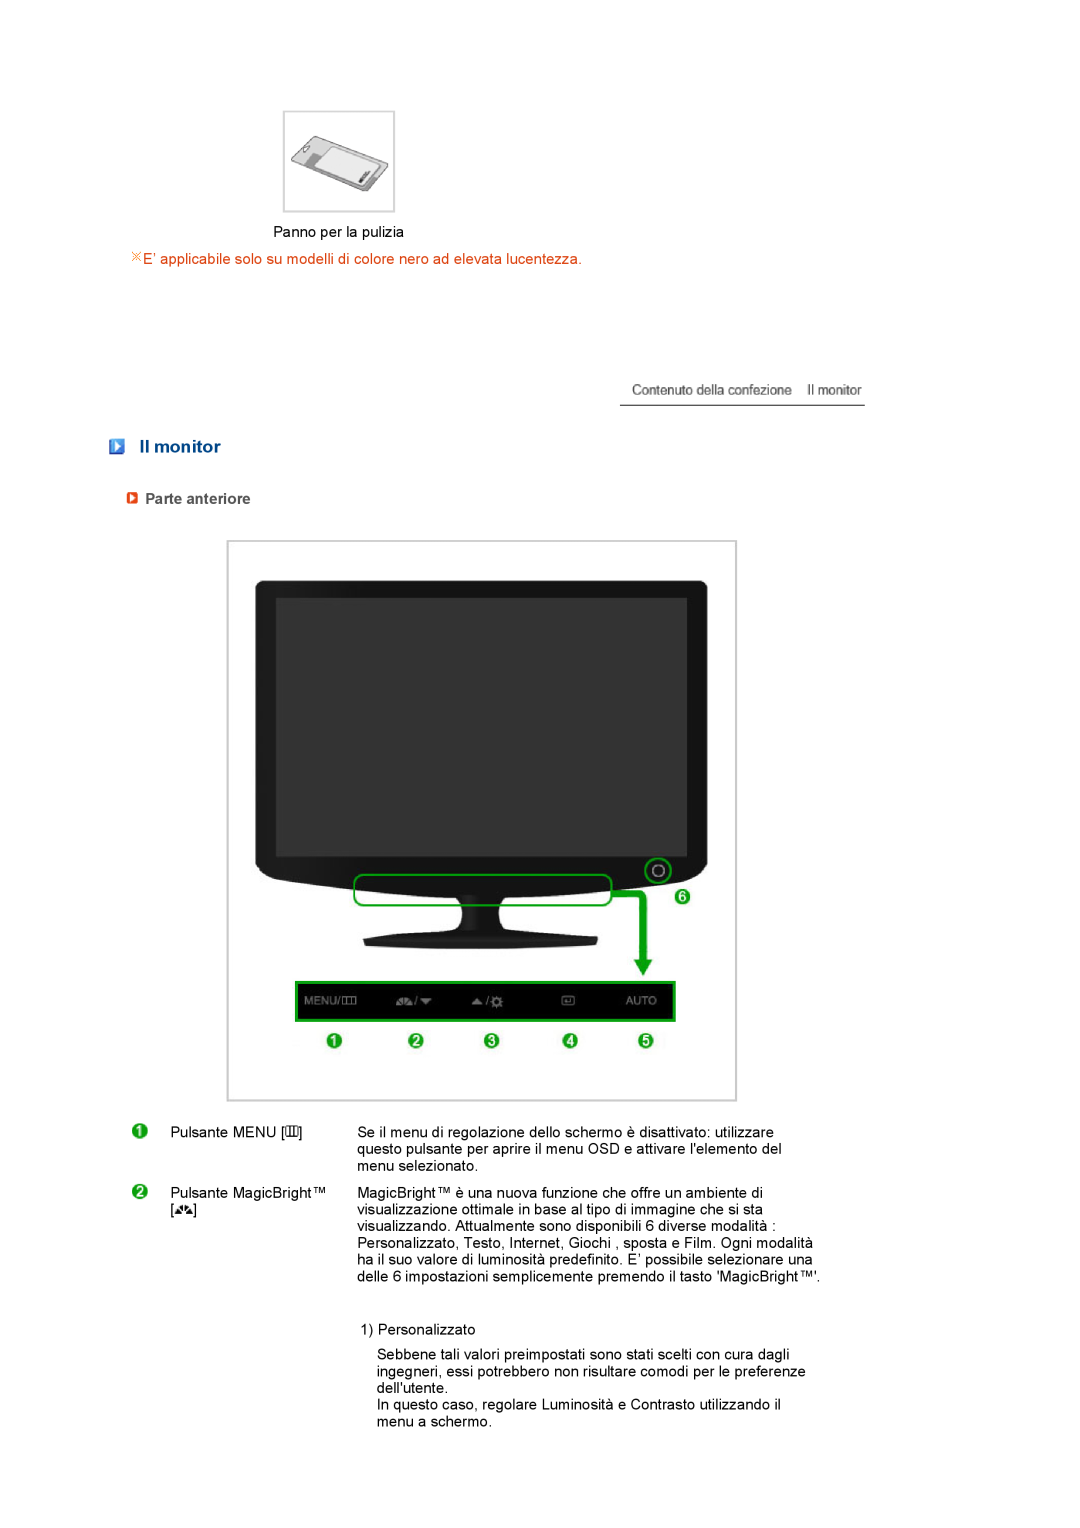 Samsung LS17PENSF/CLT manual Il monitor, Parte anteriore 